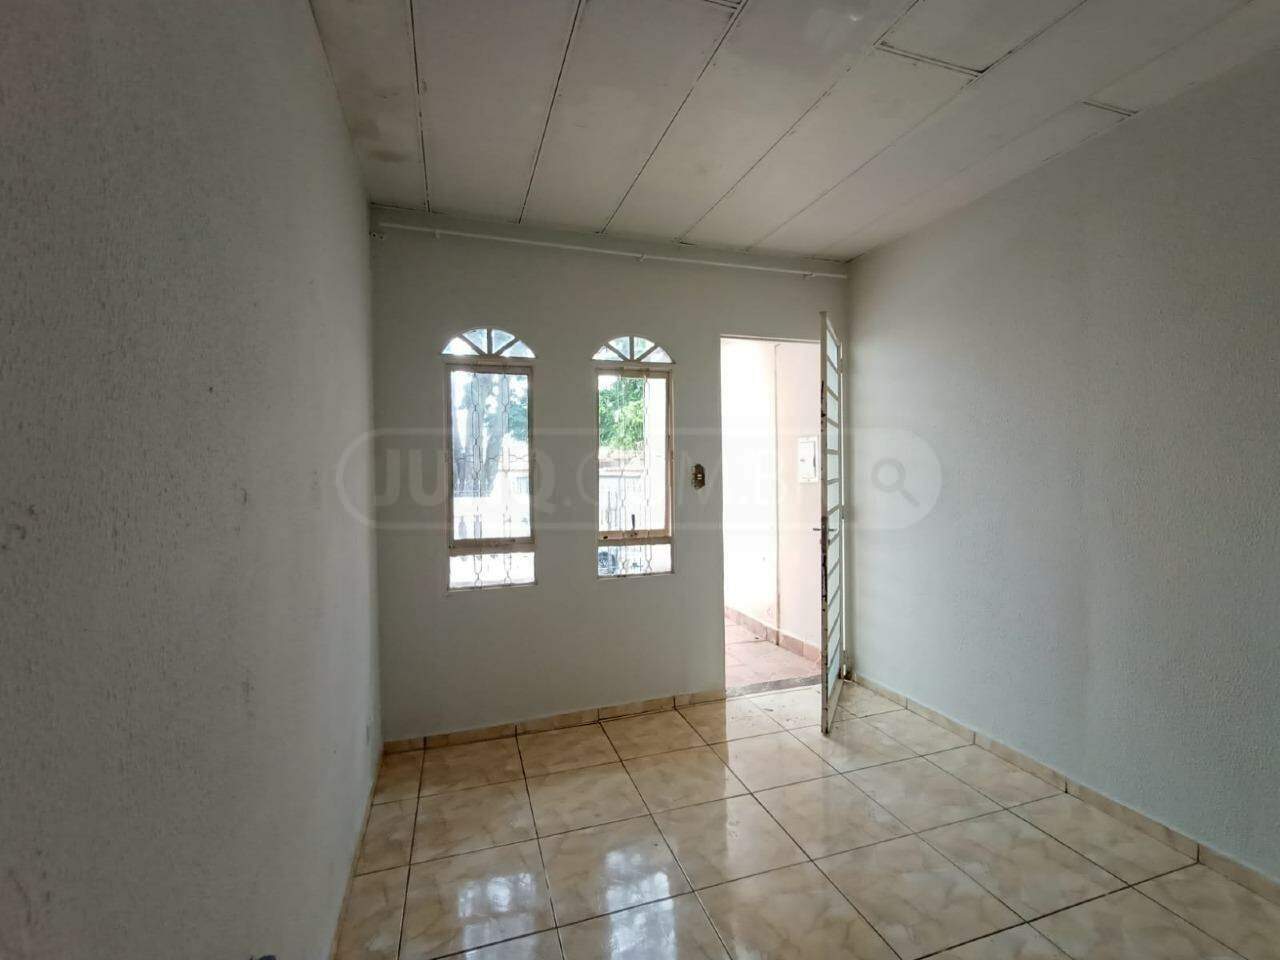 Casa à venda, 3 quartos, 2 vagas, no bairro Santa Terezinha em Piracicaba - SP